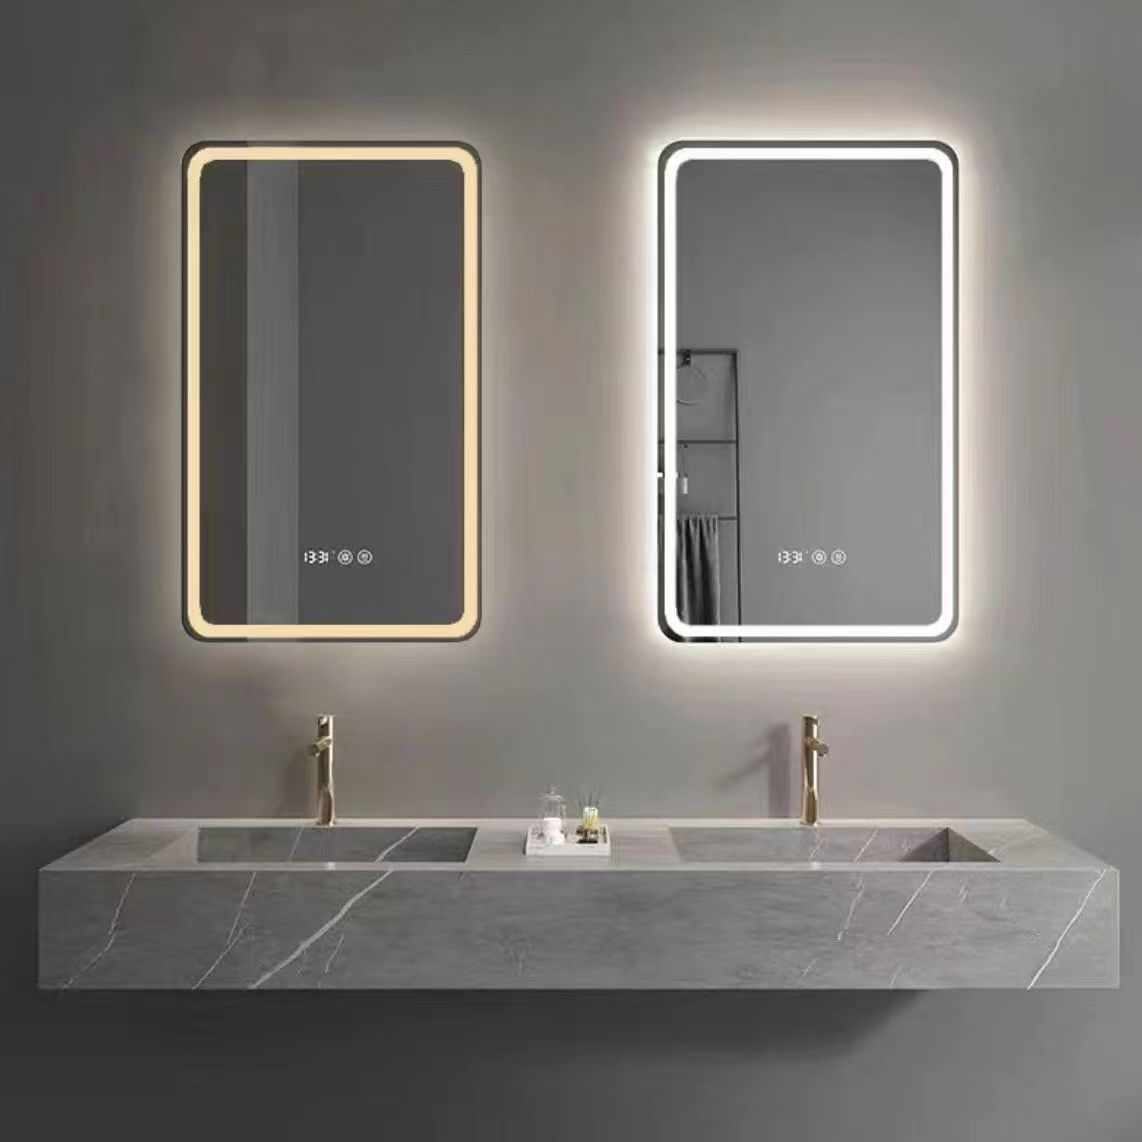 Mirall de bany, mirall, mirall rodó, mirall rectangular